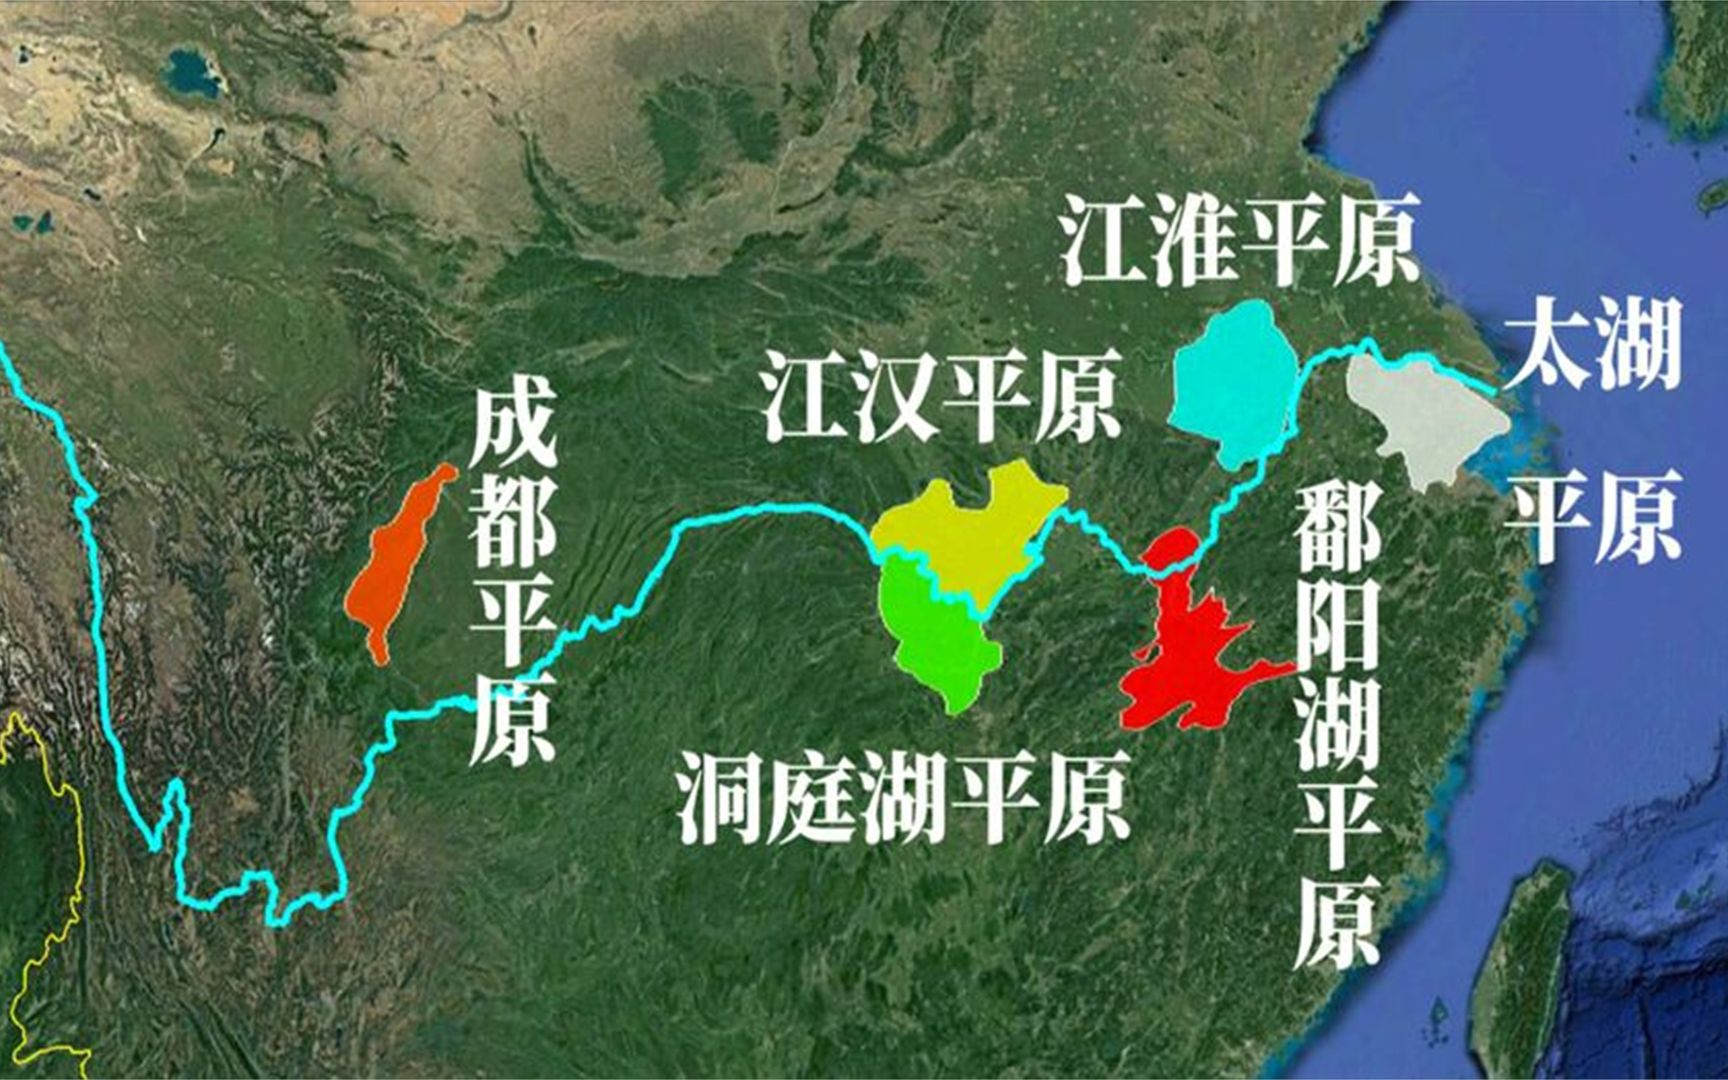 长江流域有六大平原,五个位于中下游,你所在城市属于哪个平原?